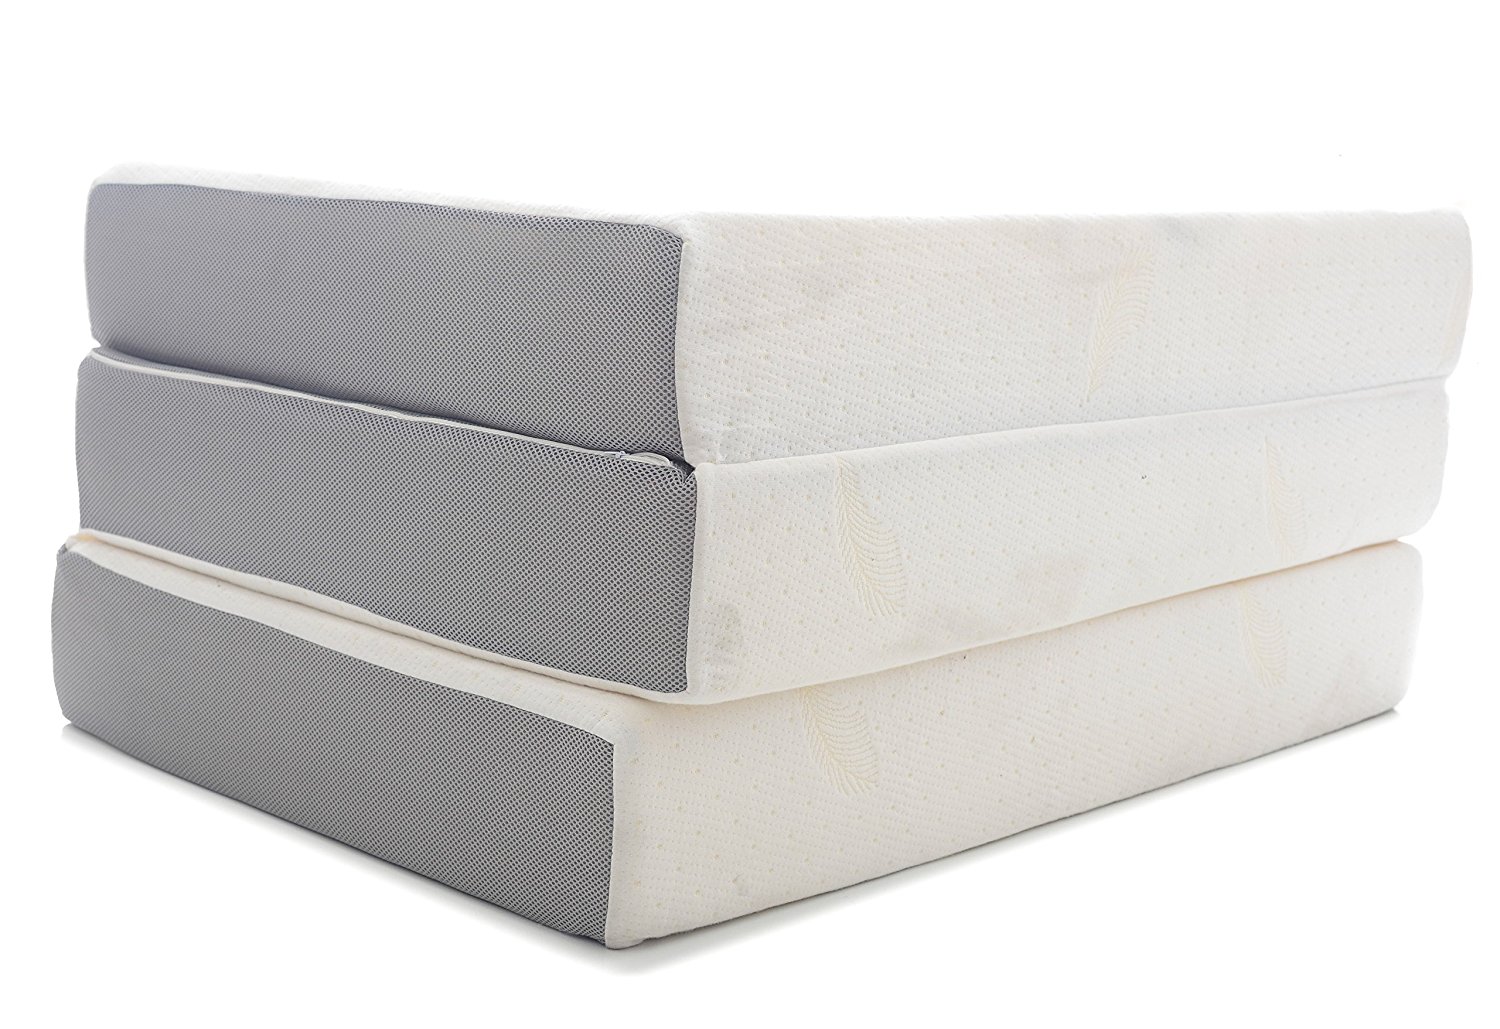 6 inch firm foam mattress